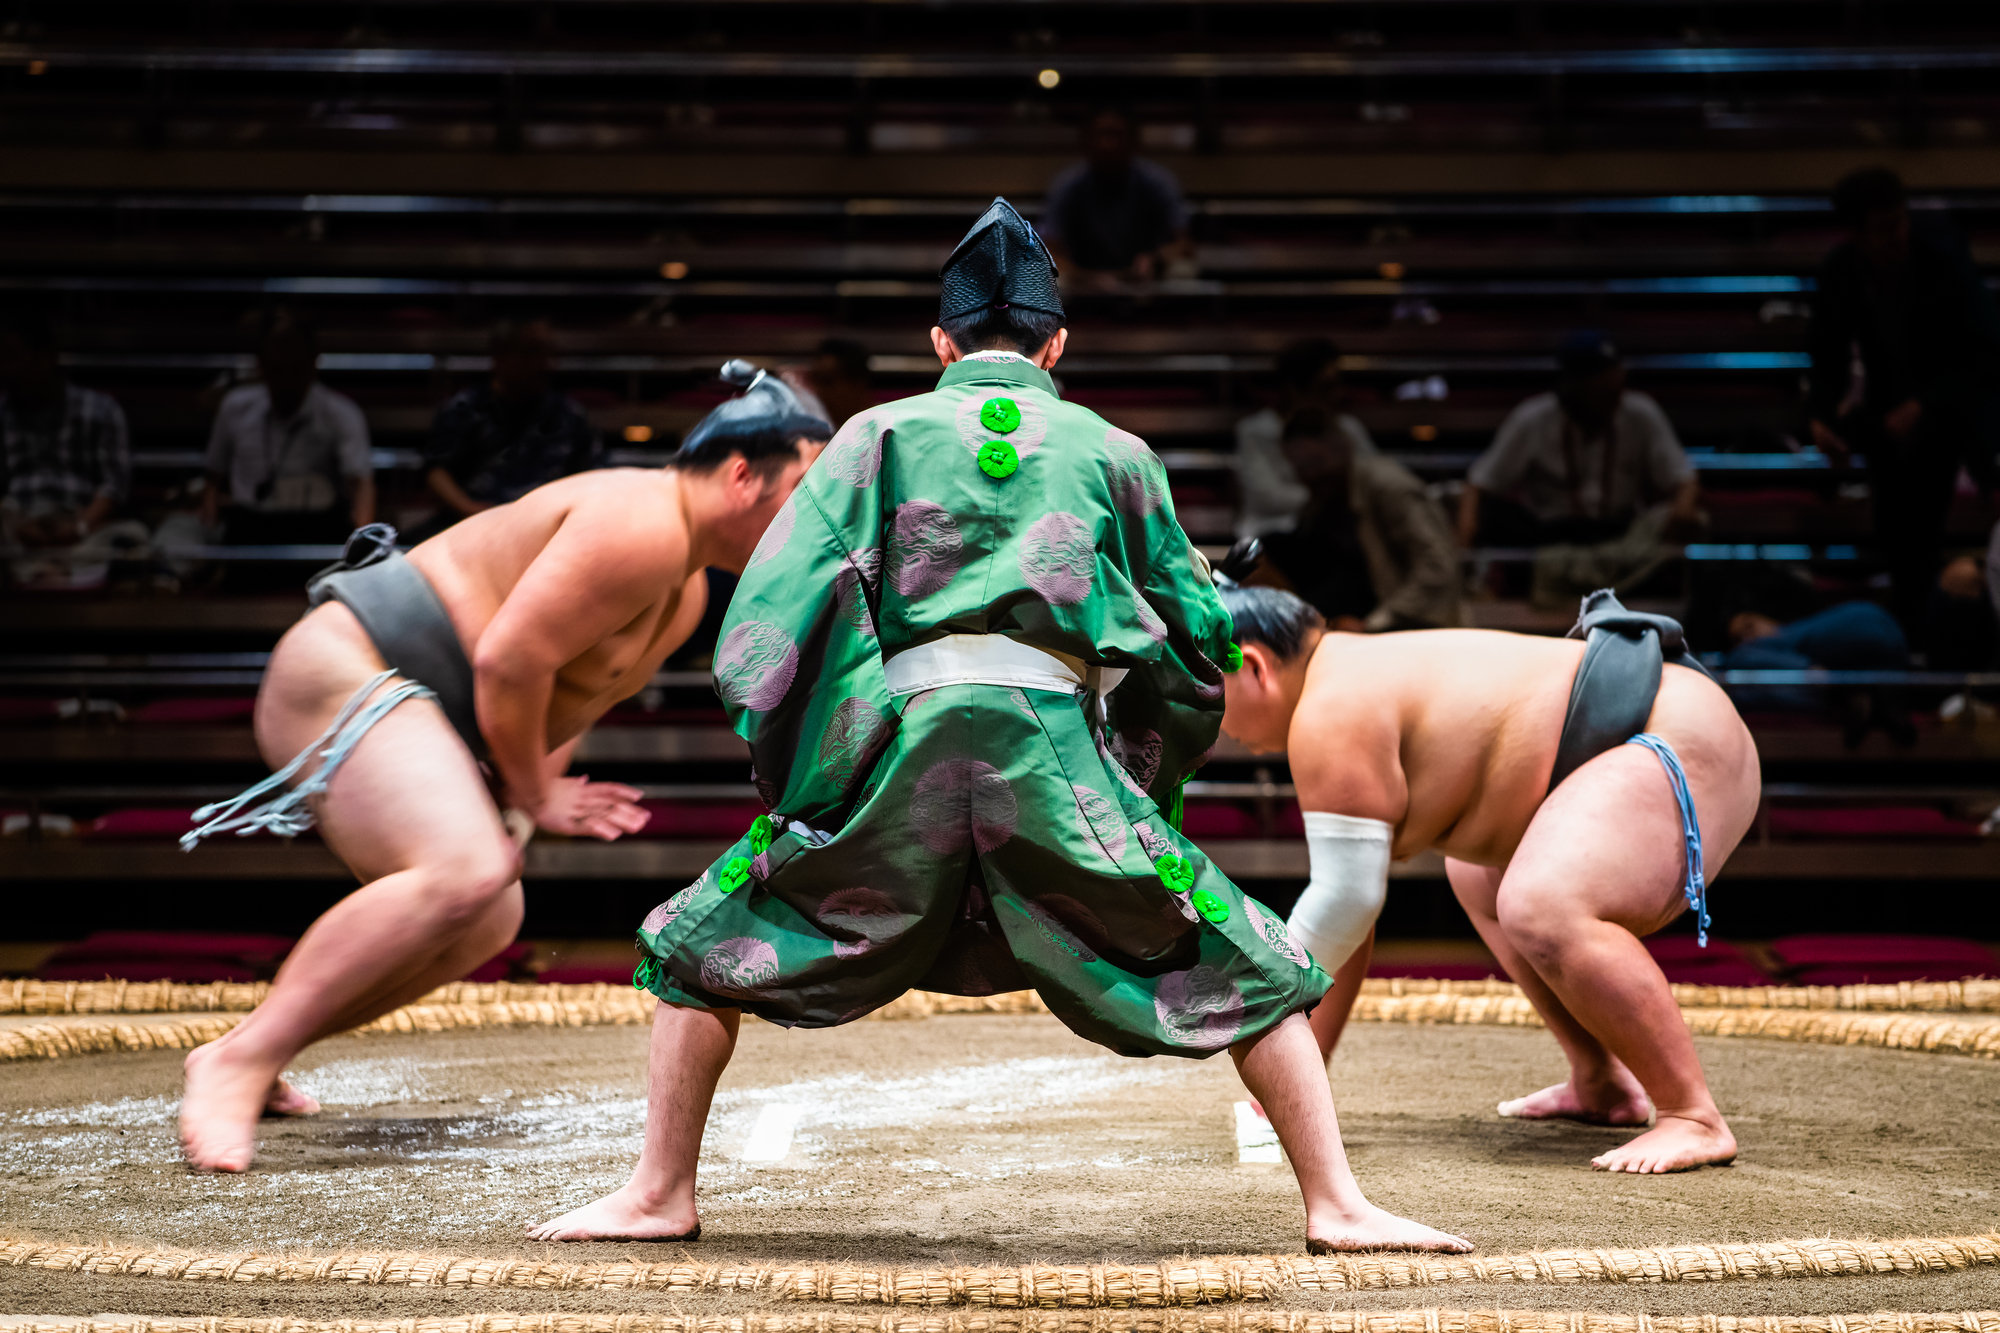 相撲の歴史は神話の世界まで遡る 神話から現代までの移り変わり にほんご日和